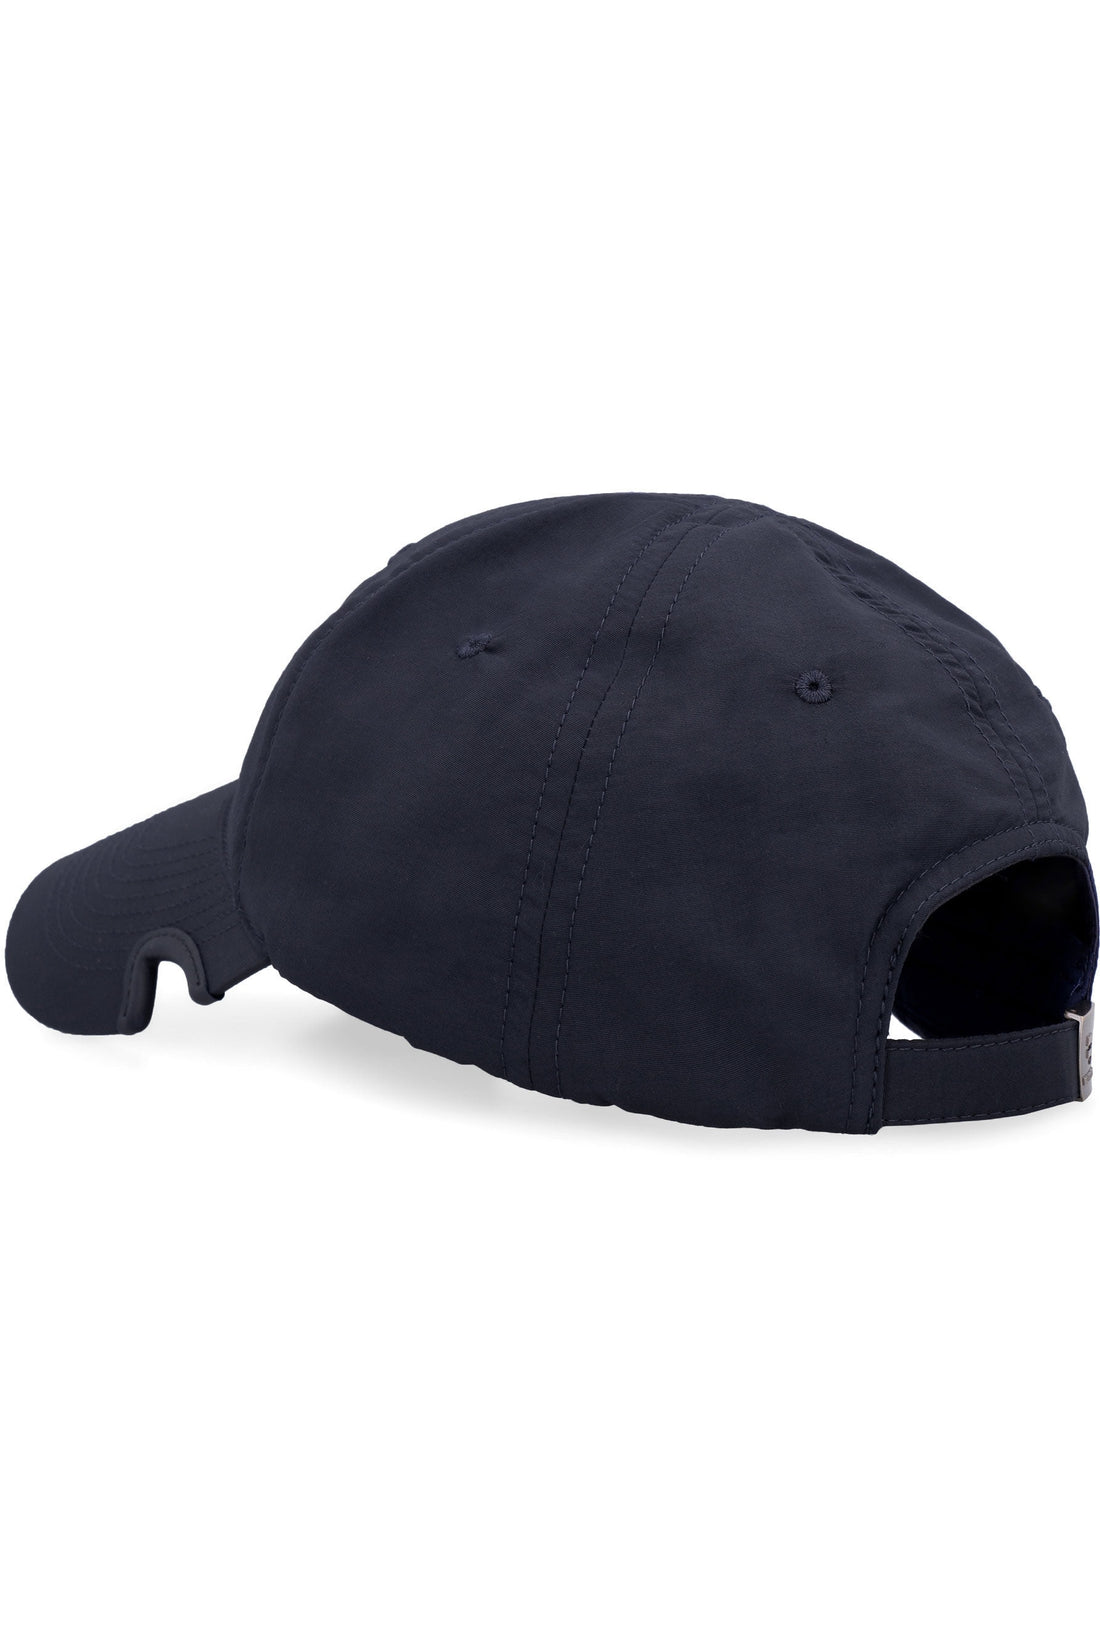 Balenciaga-OUTLET-SALE-Notch Tracksuit cotton baseball cap-ARCHIVIST